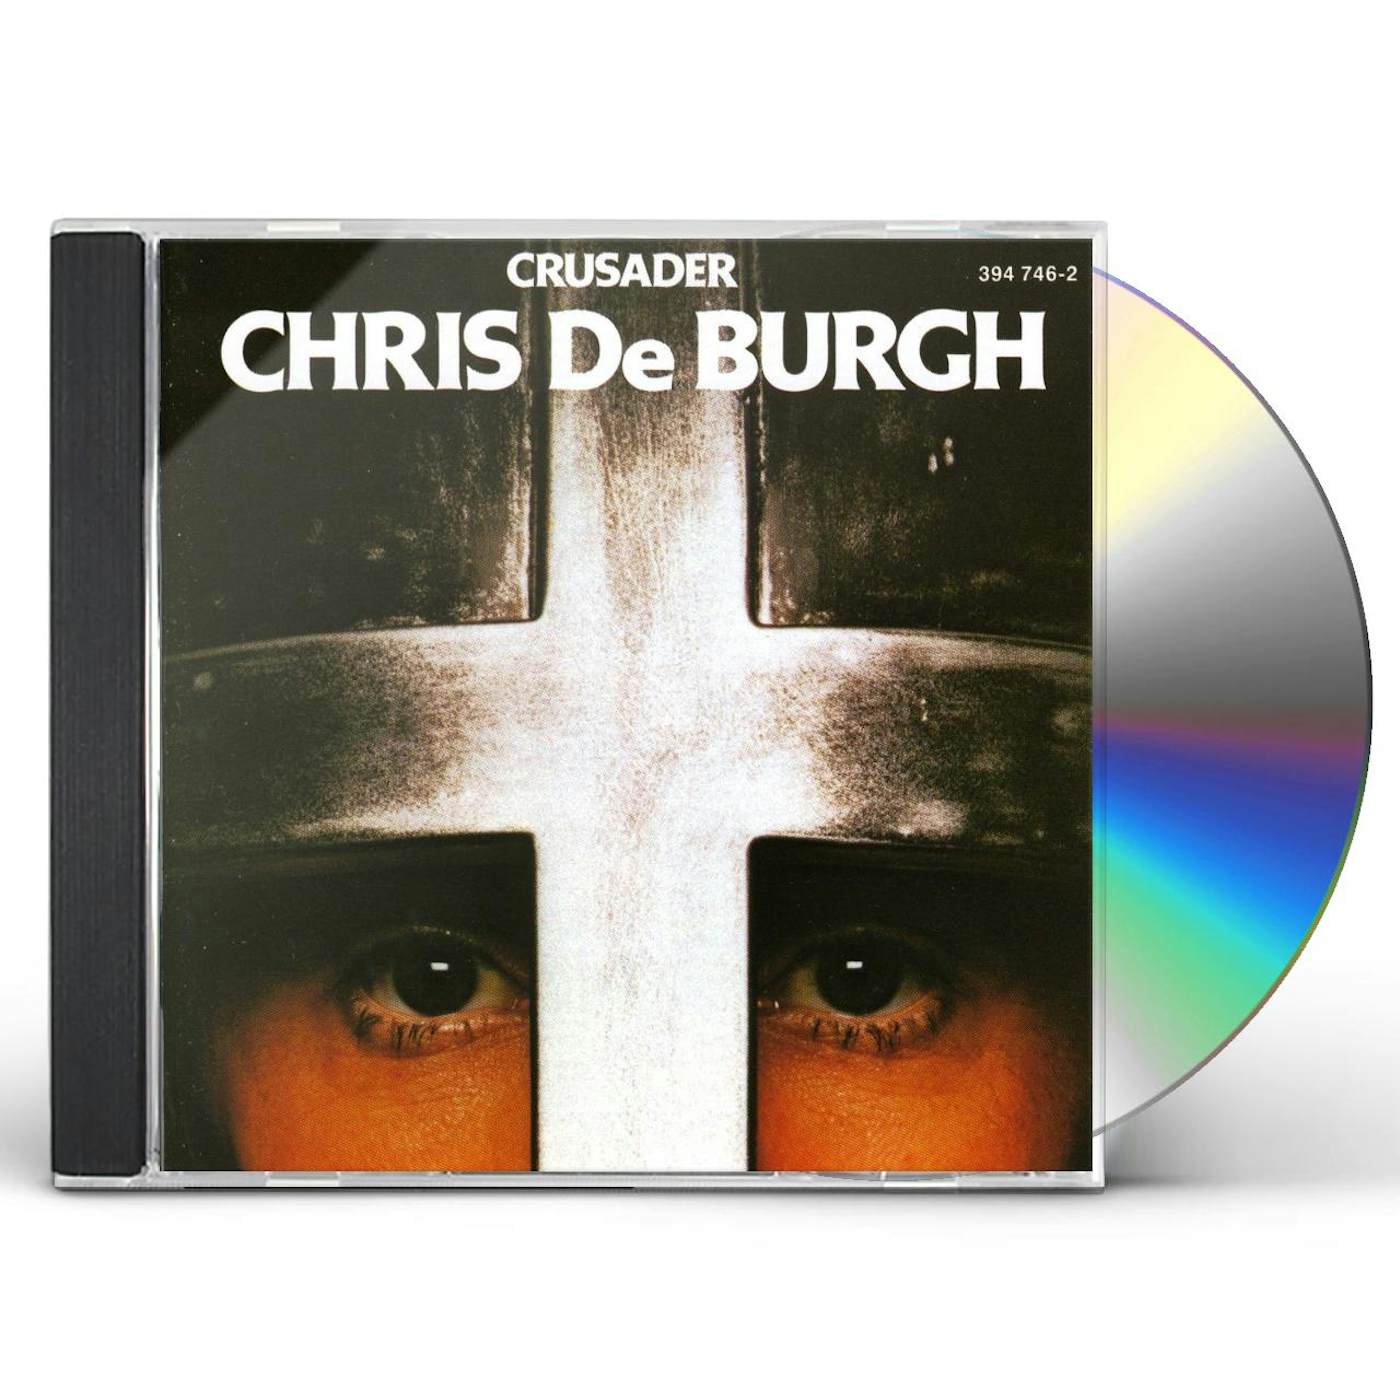 Chris de Burgh CRUSADER CD